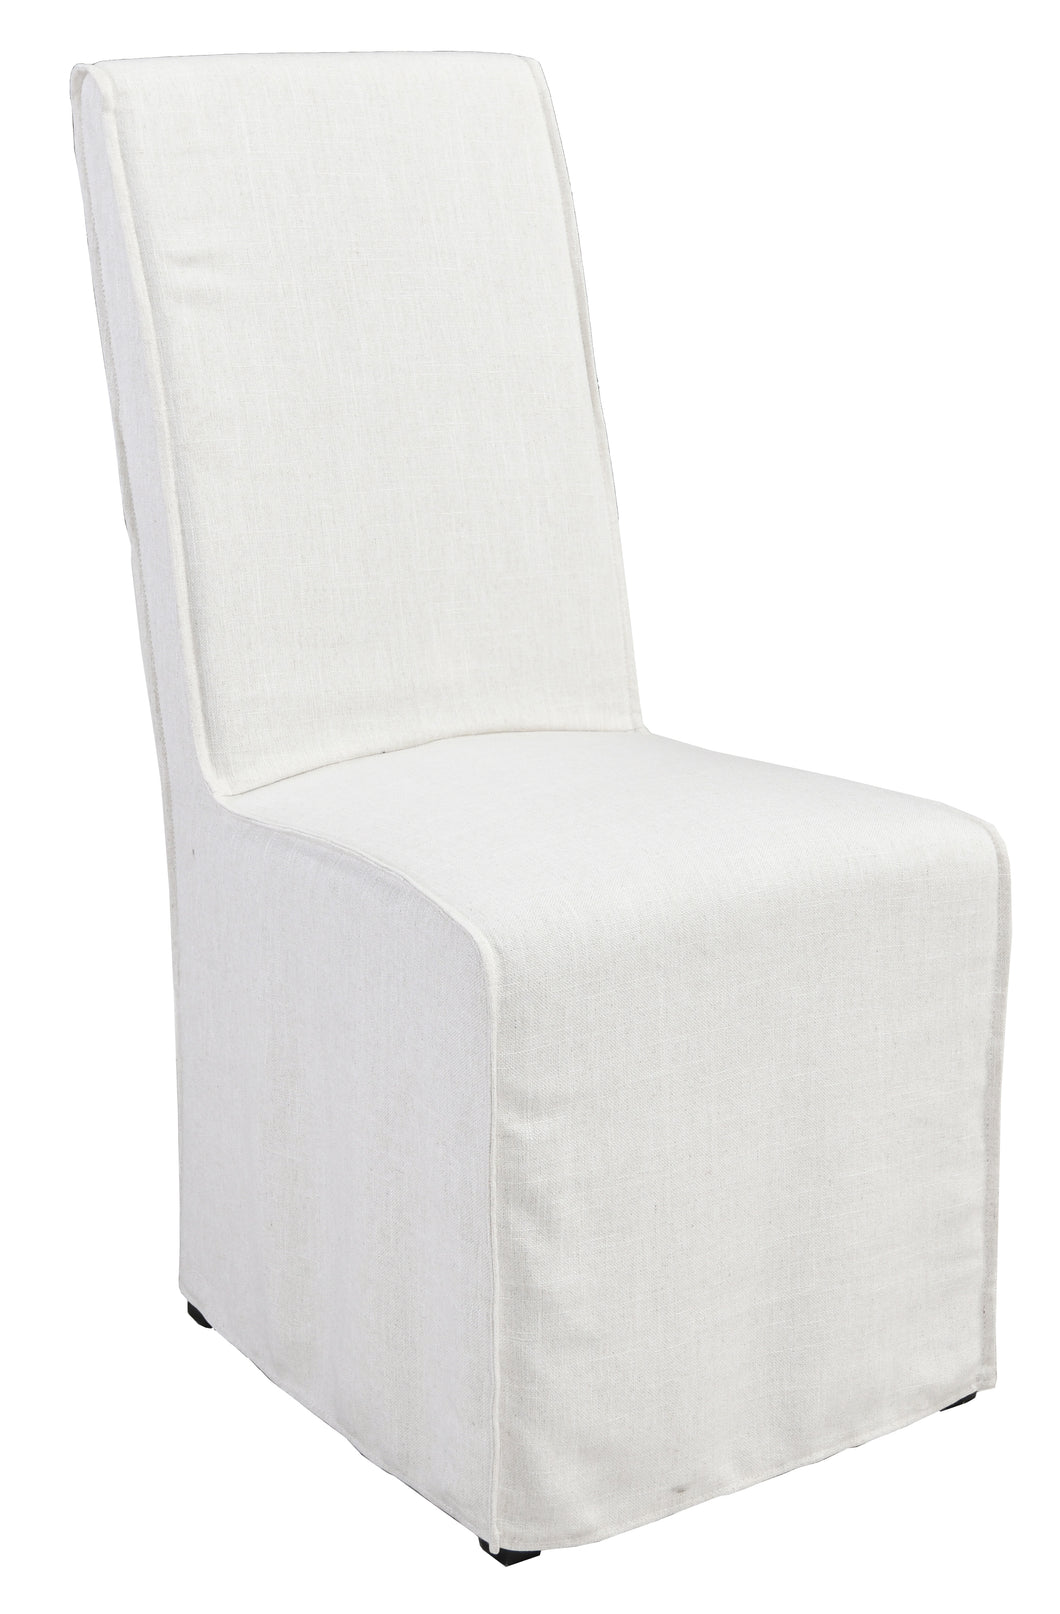 Jordan Upholstered Dining Chair - White